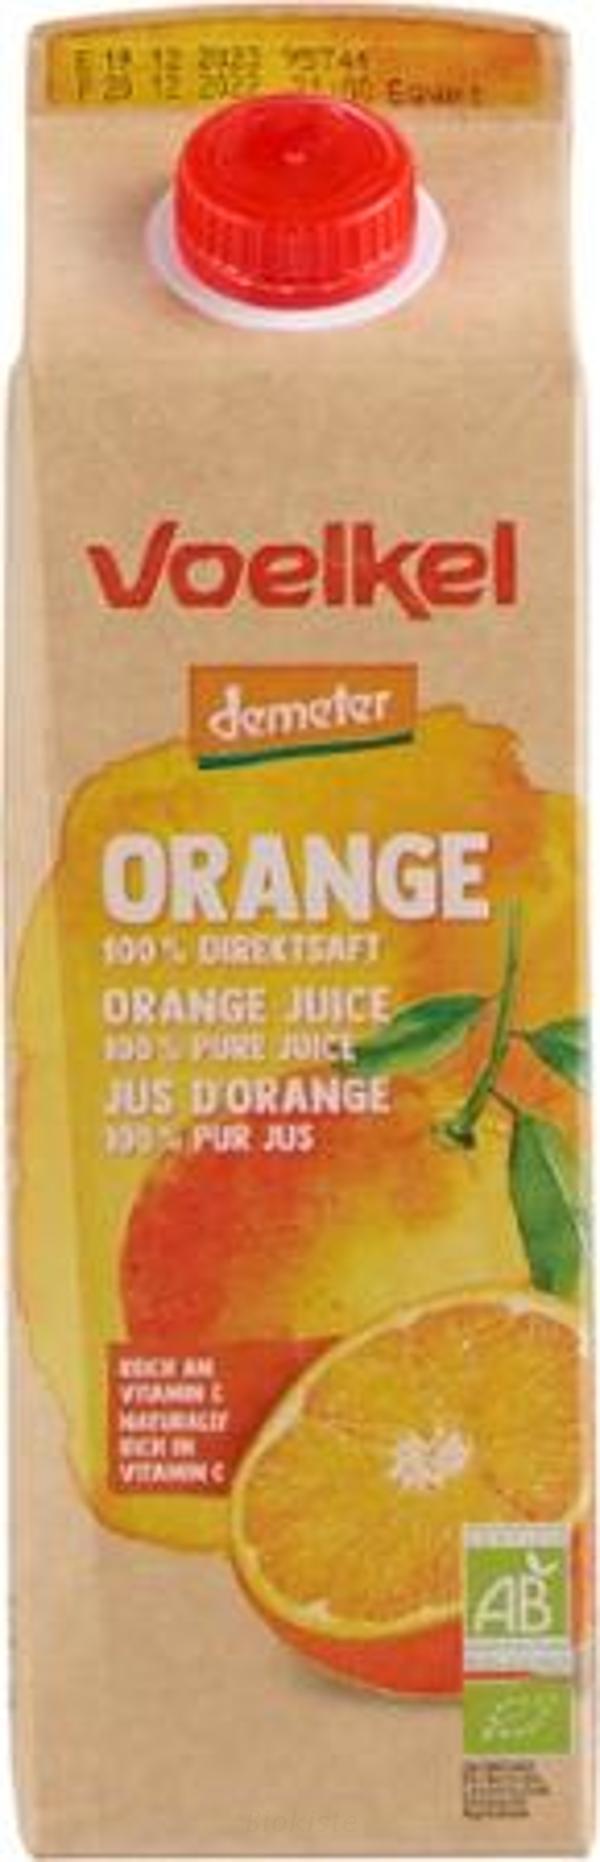 Produktfoto zu Orangensaft Elopak 1 Liter